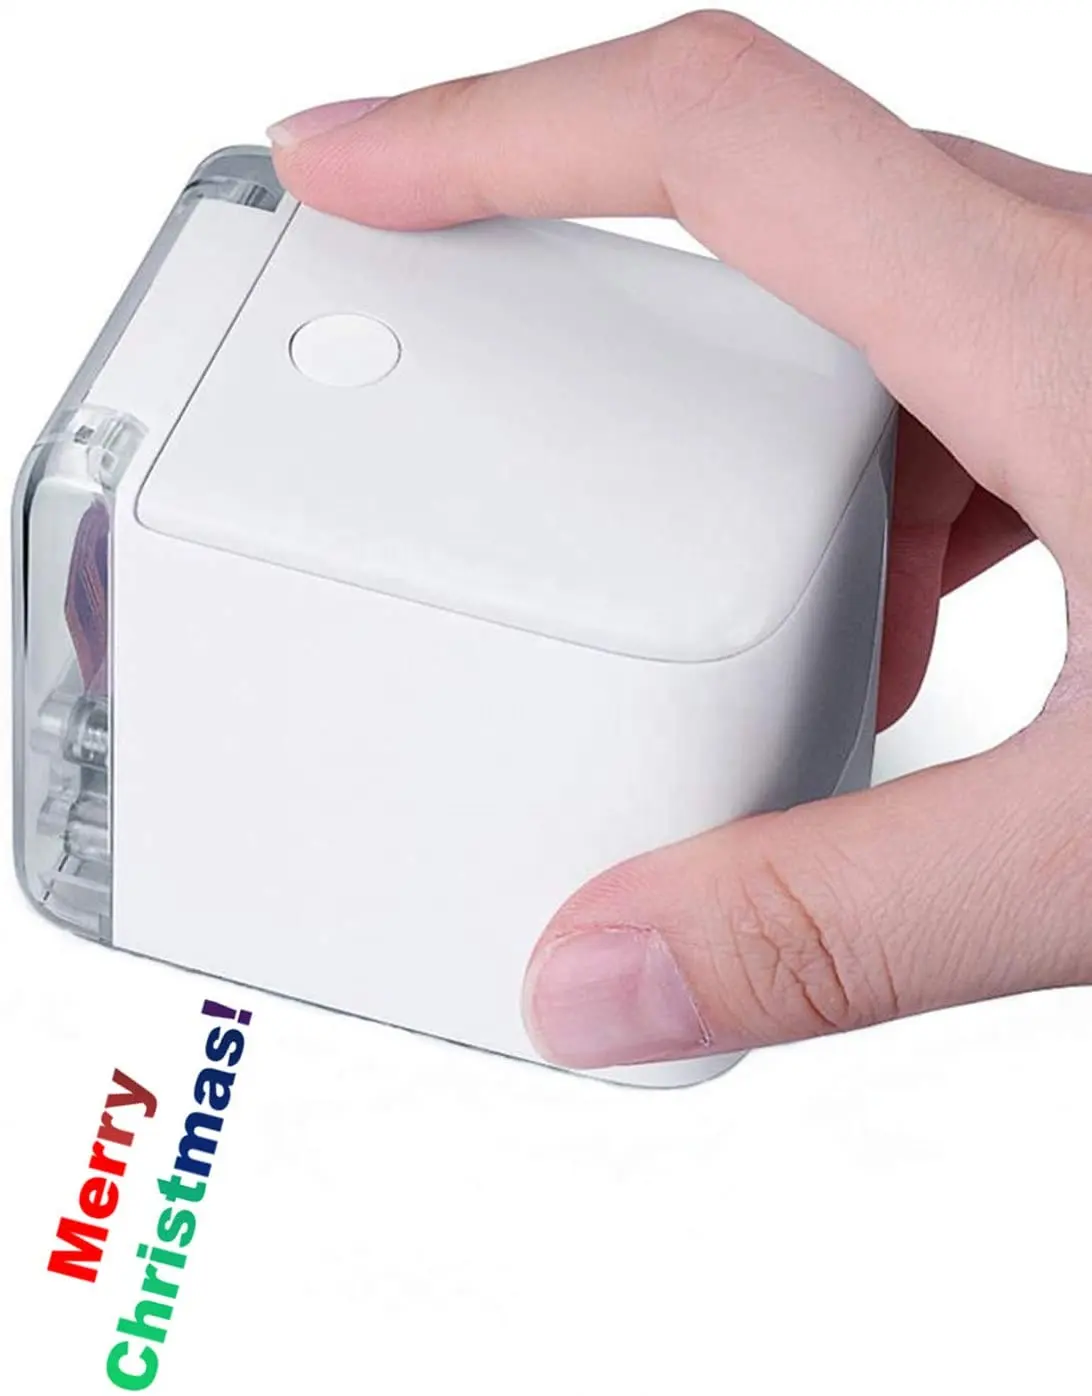 Caneta de impressão portátil mini impressora colorida, mais pequena impressora móvel, produto novo, 2021